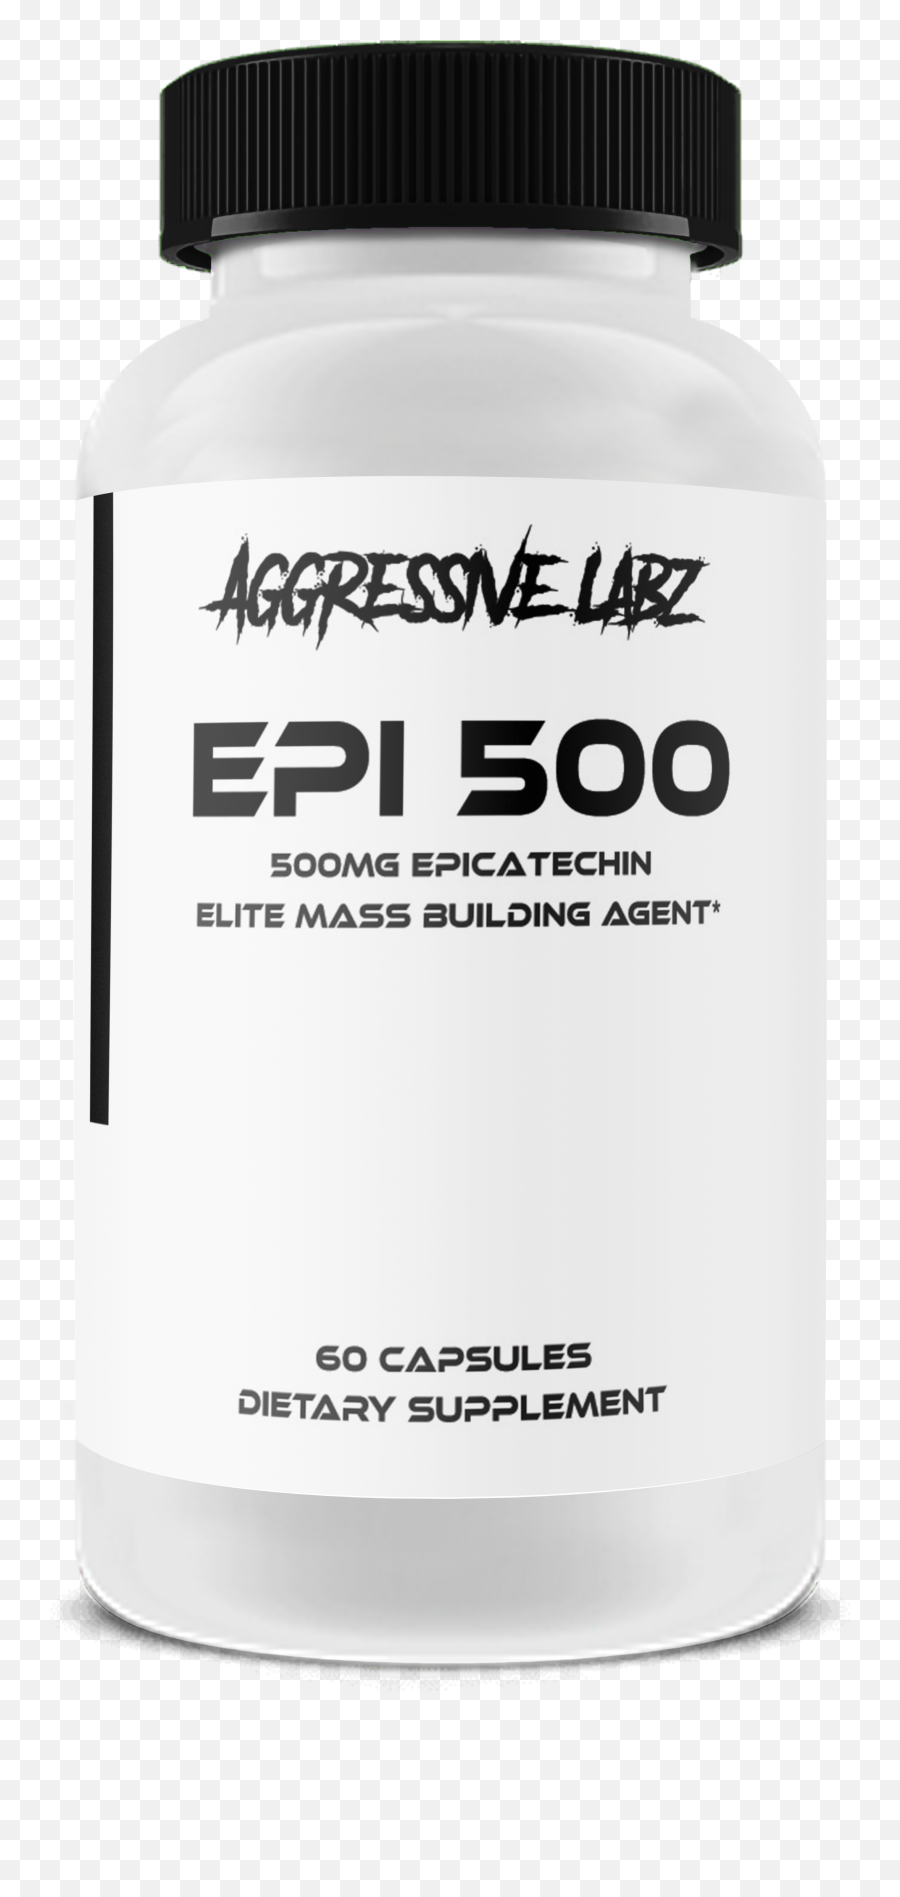 Epi 500 Elite Natural Mass Building Agent - Medical Supply Emoji,Elite Agent Png